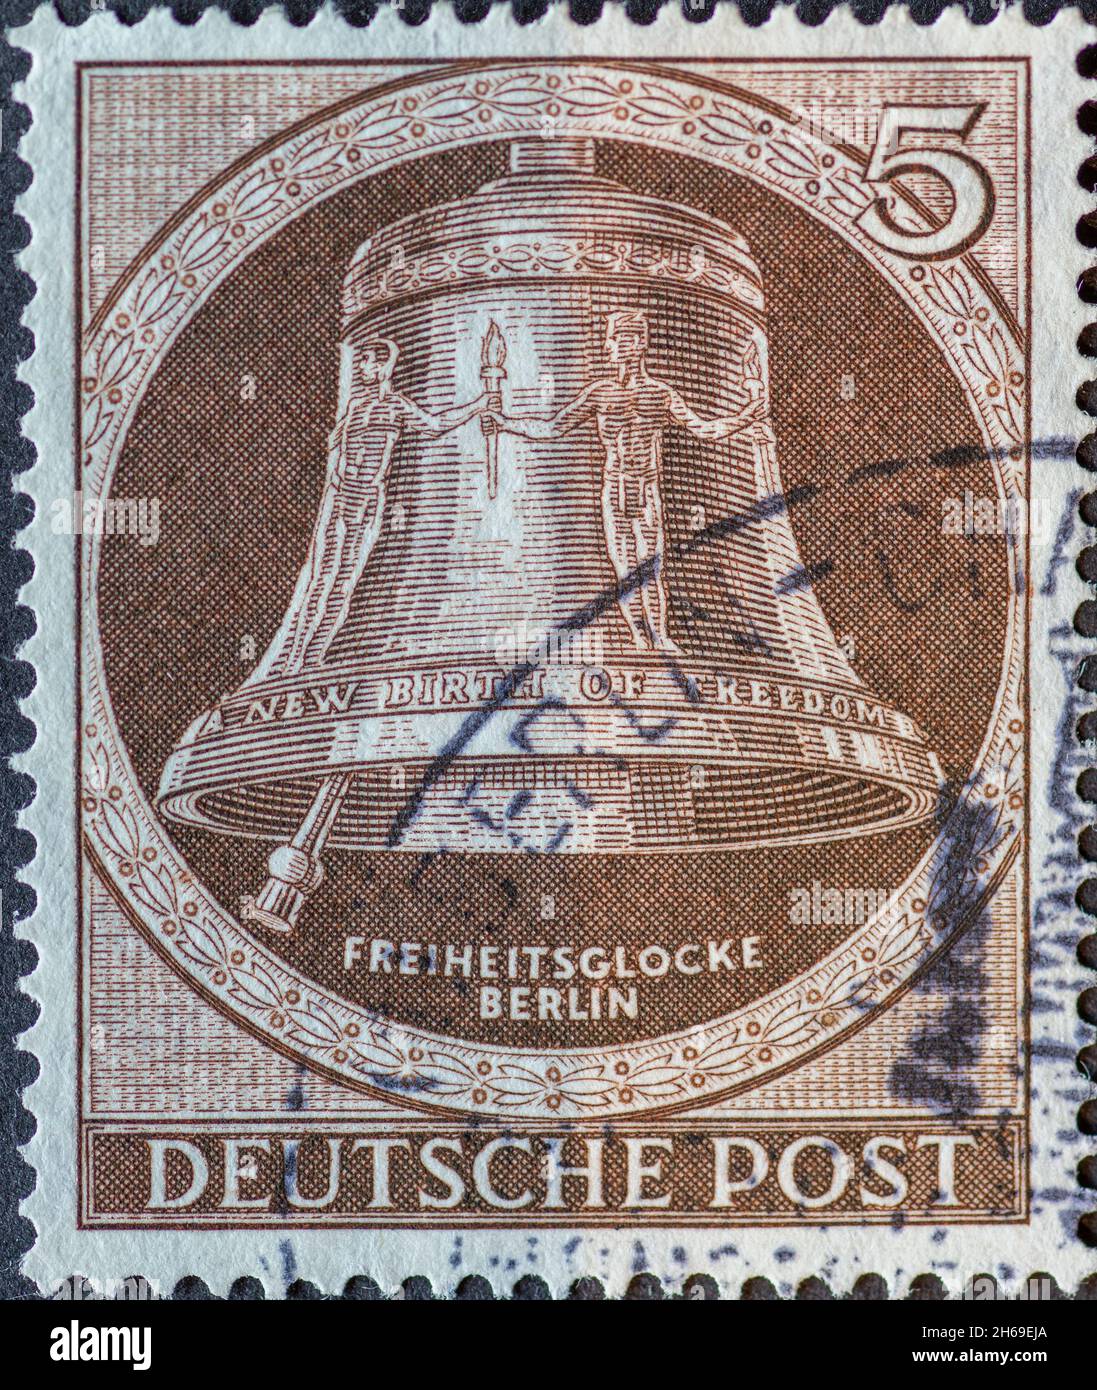 GERMANIA, Berlino - CIRCA 1951: Un francobollo dalla Germania, Berlino mostrando la campana della libertà con il testo: Nuova nascita della libertà. Clapper a sinistra. Colore: Foto Stock